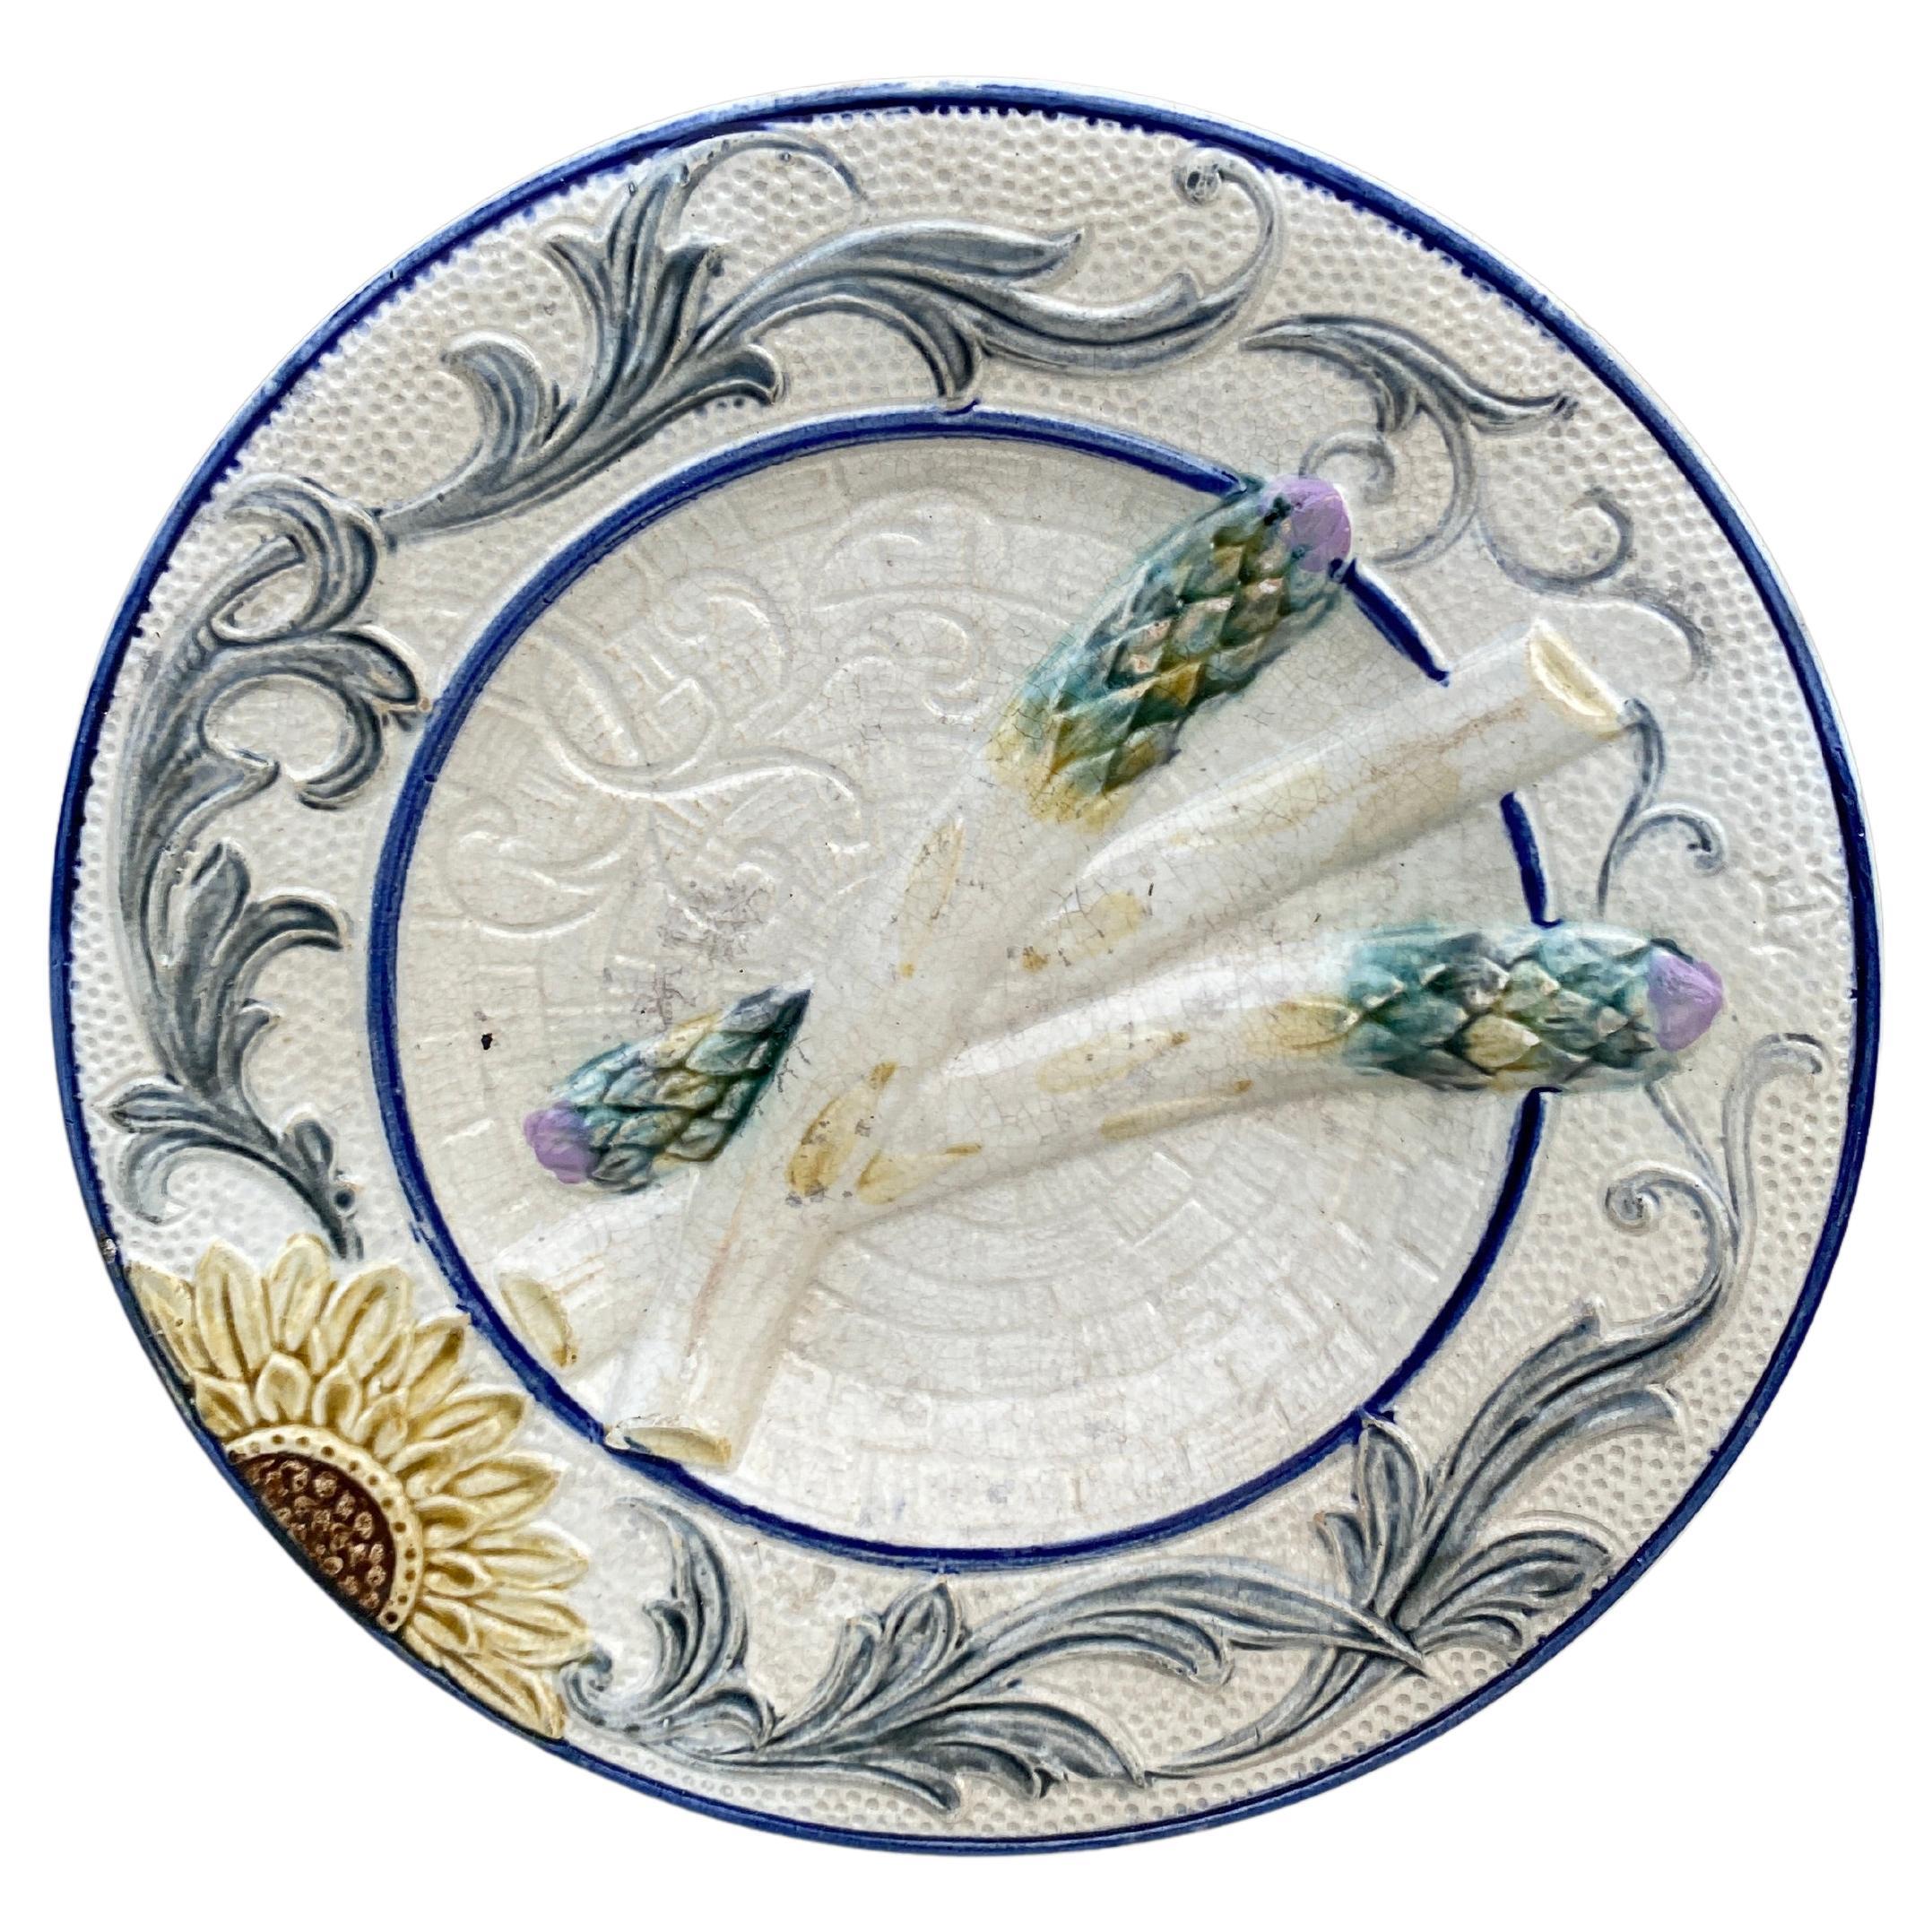 Rare assiette à asperges et tournesol en majolique de Belgique Wasmuel, vers 1880